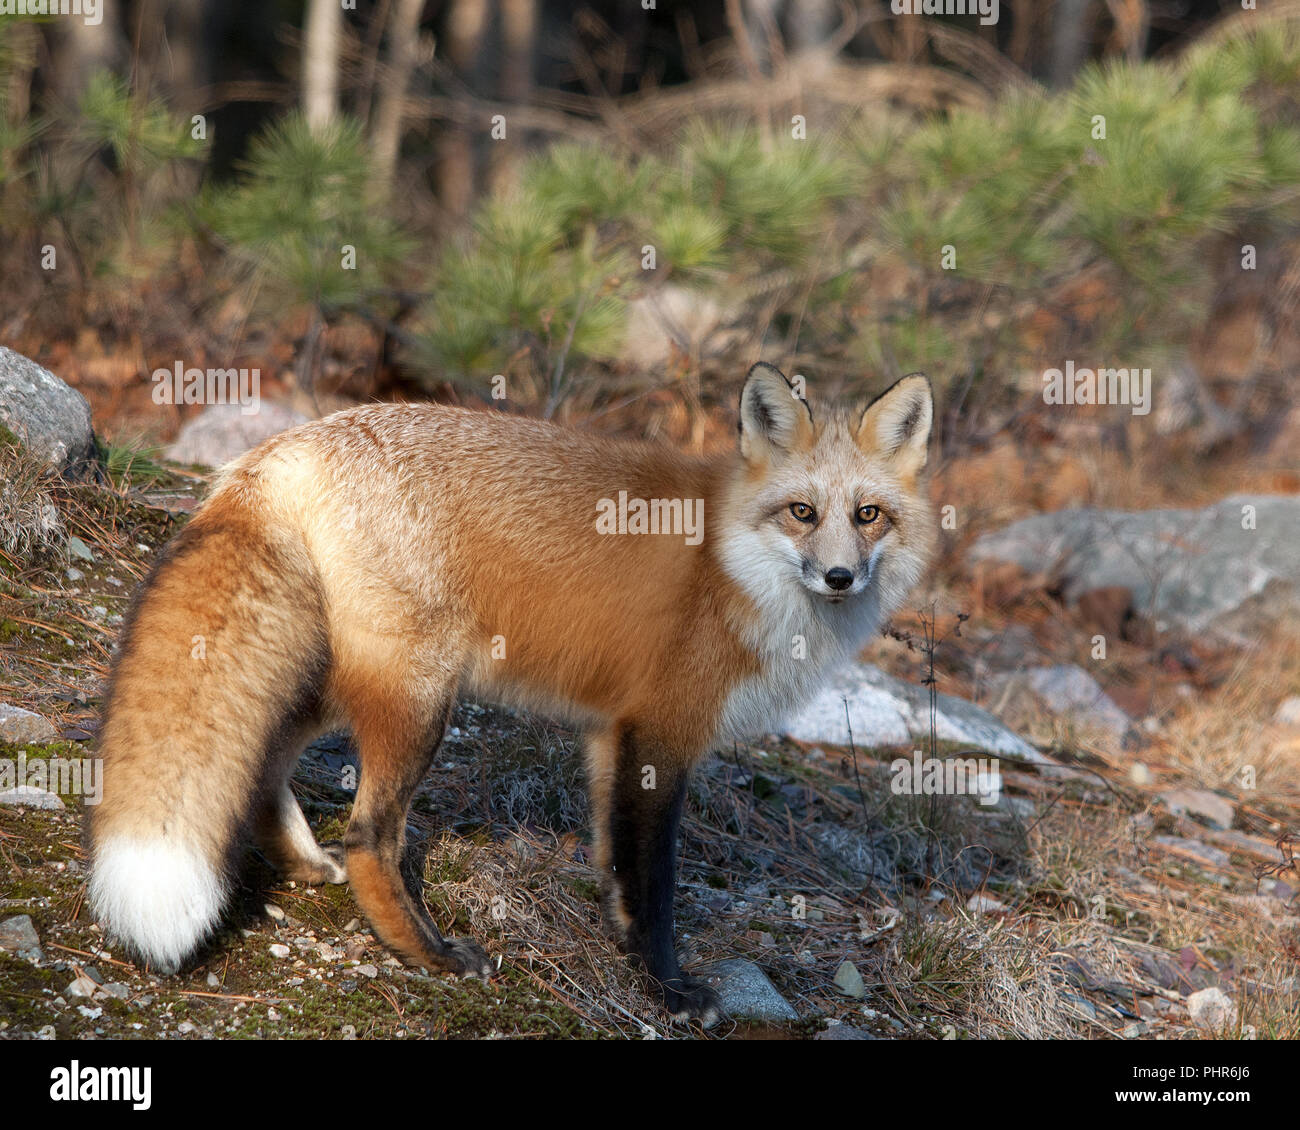 Fox Red Fox Tier close-up Profil anzeigen im Wald in seiner Umgebung aussetzen Fell, Kopf, Augen, Ohren, Nase, Pfoten, Schwanz mit einer bokeh Hintergrund. Stockfoto